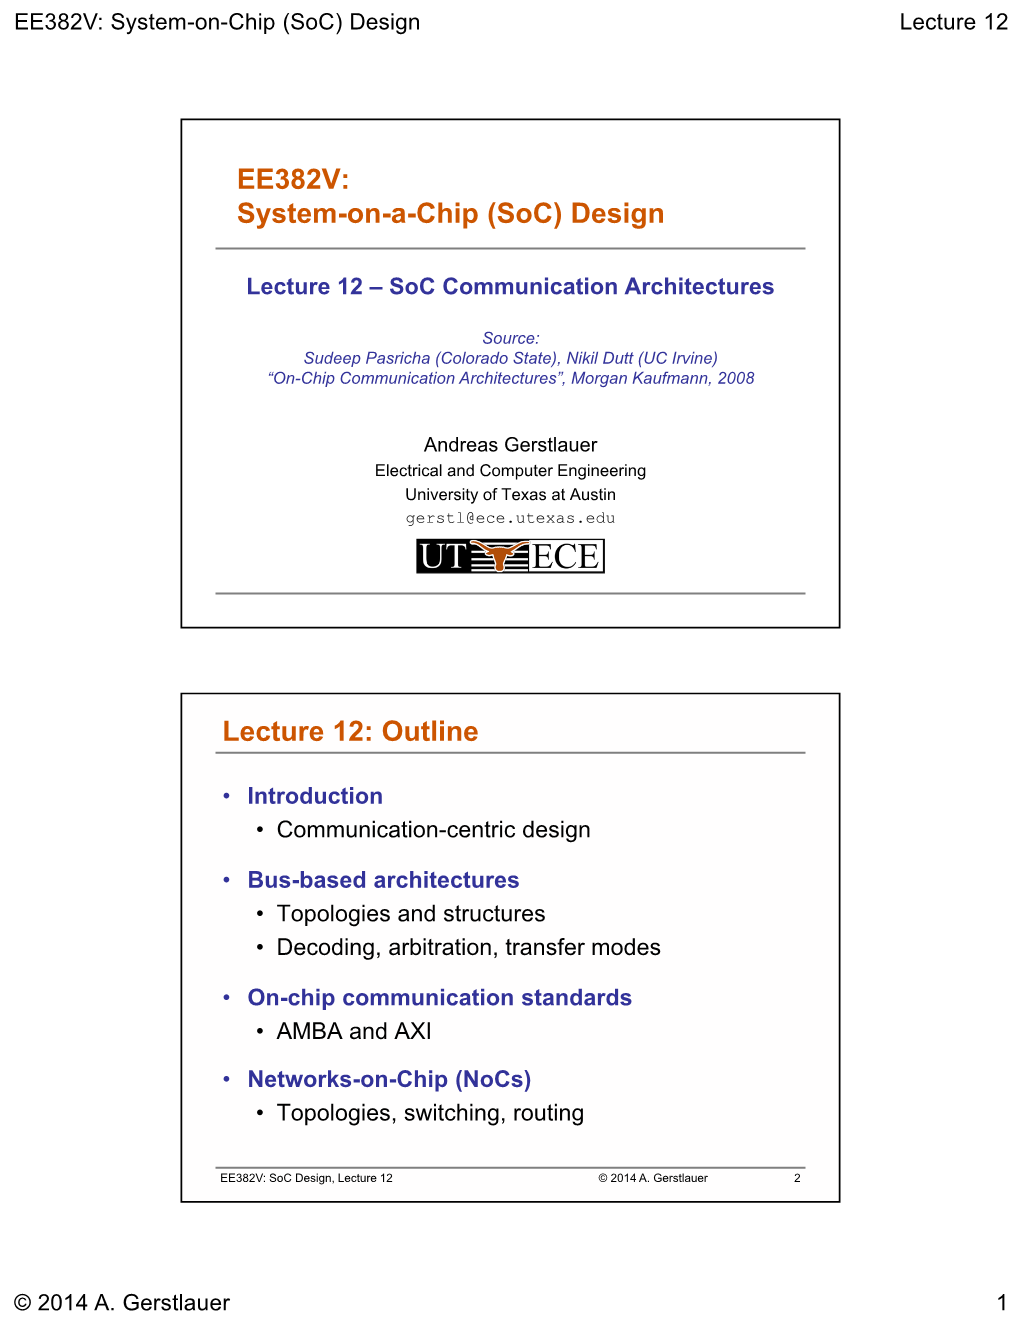 EE382V: System-On-A-Chip (Soc) Design Lecture 12: Outline